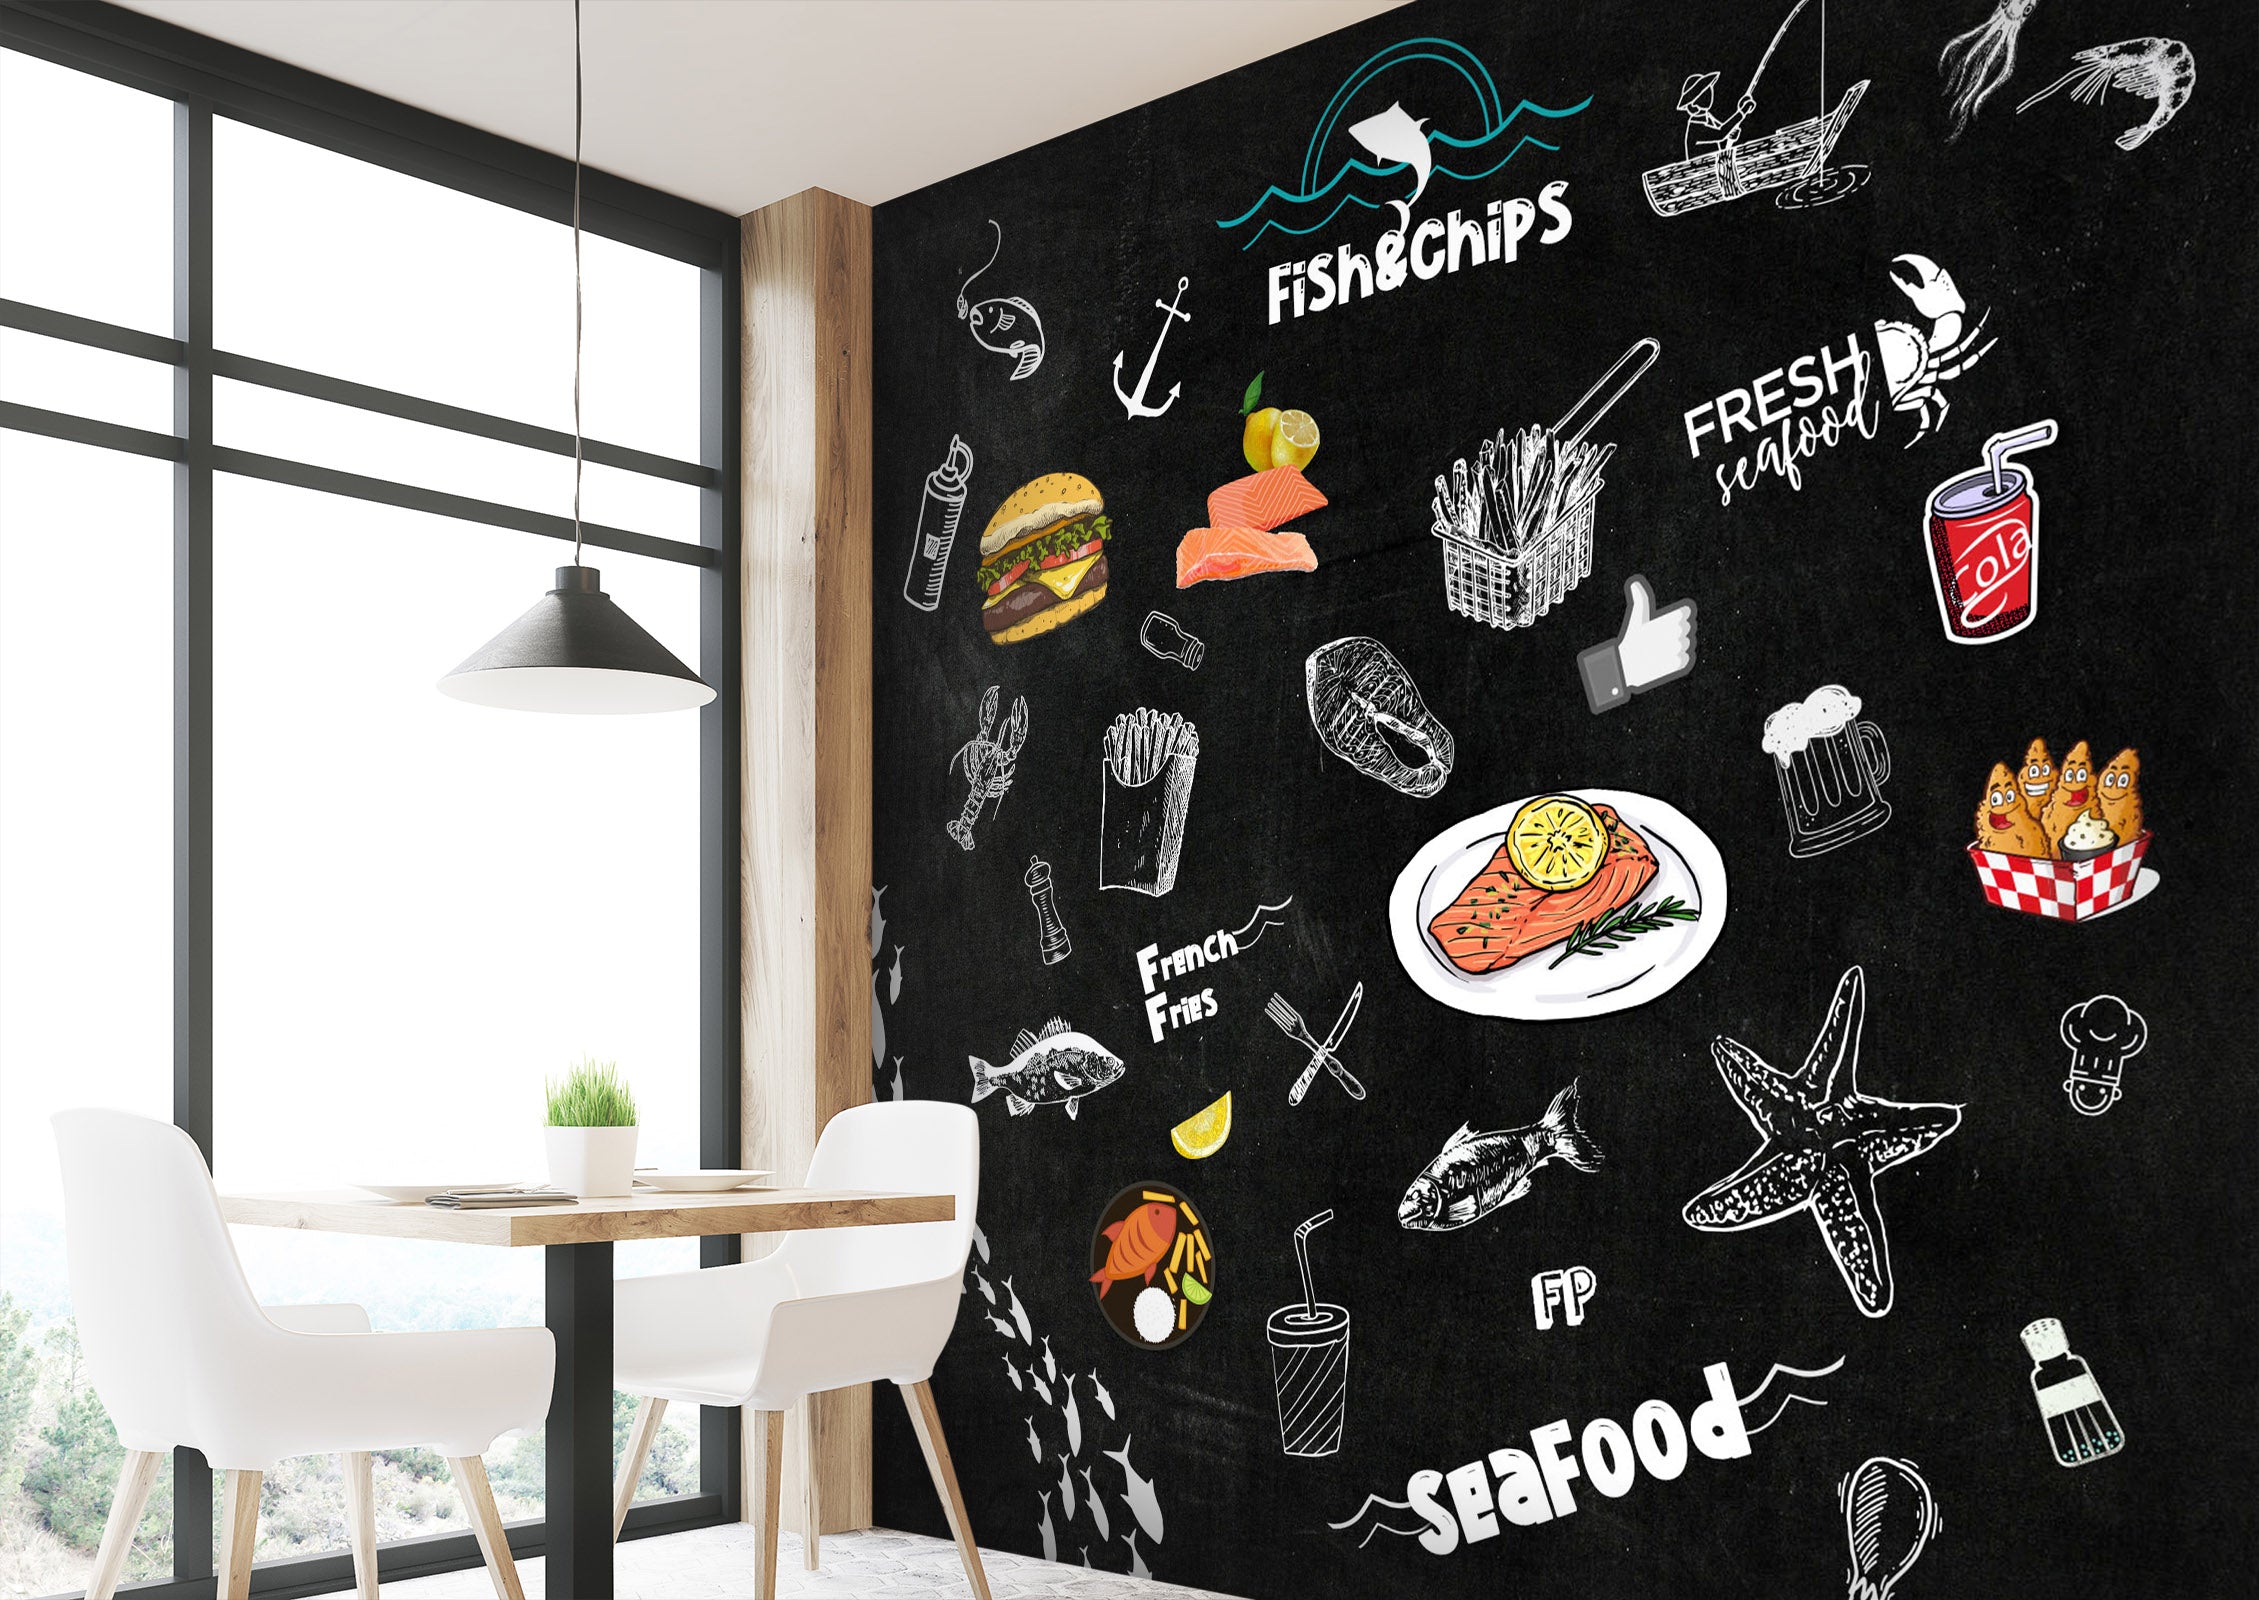 3D stylish blackboard fish chips 01 Wall Murals Wallpaper AJ Wallpaper 2 